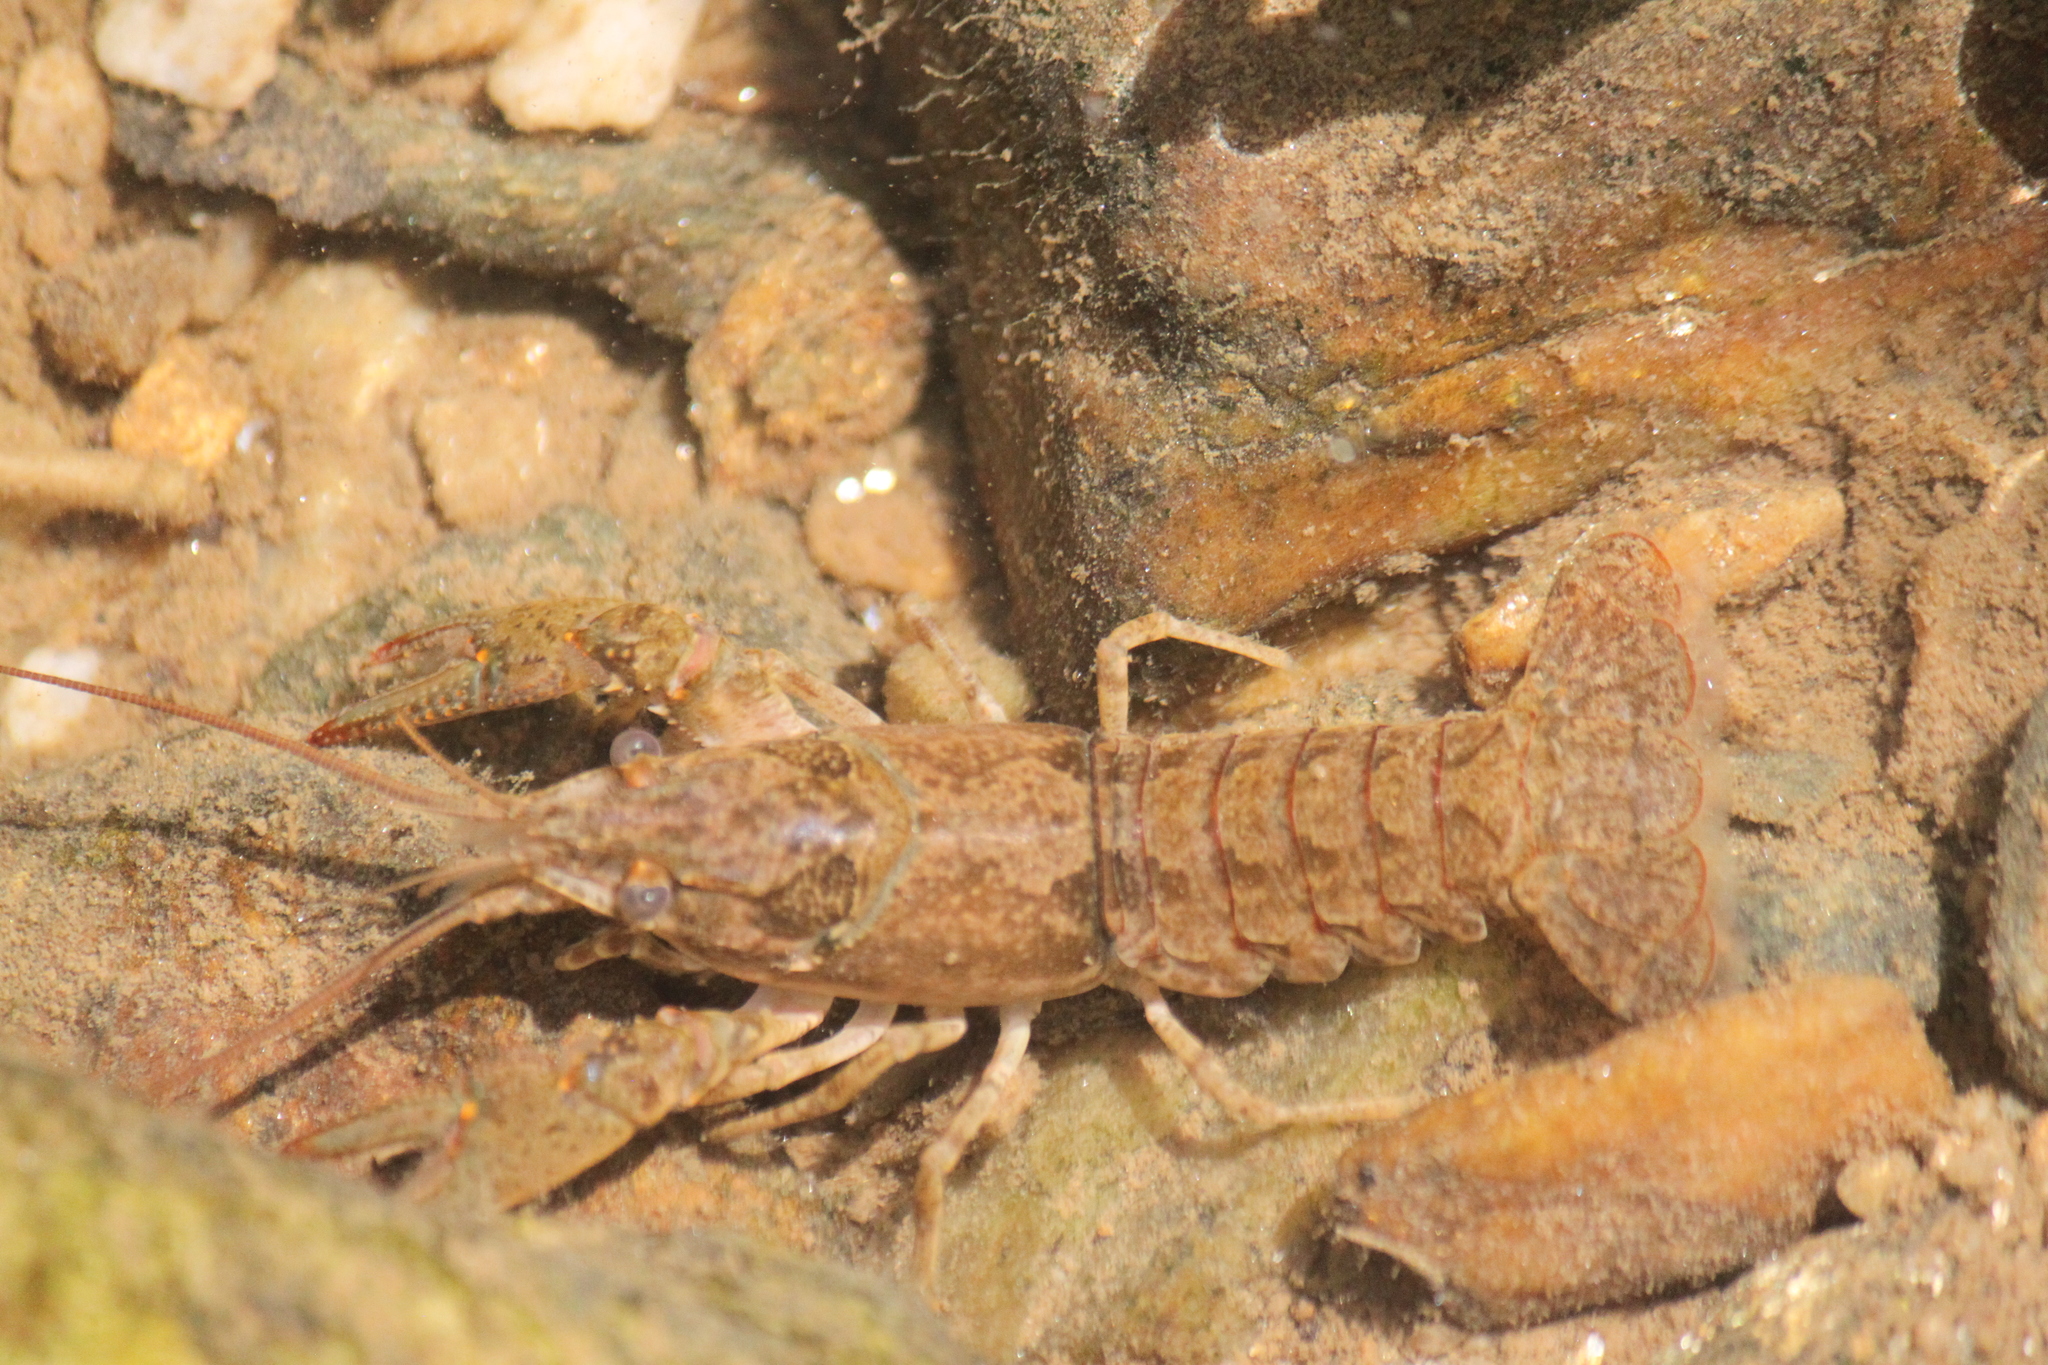 Maryland Biodiversity Project - Virile Crayfish (Faxonius virilis)